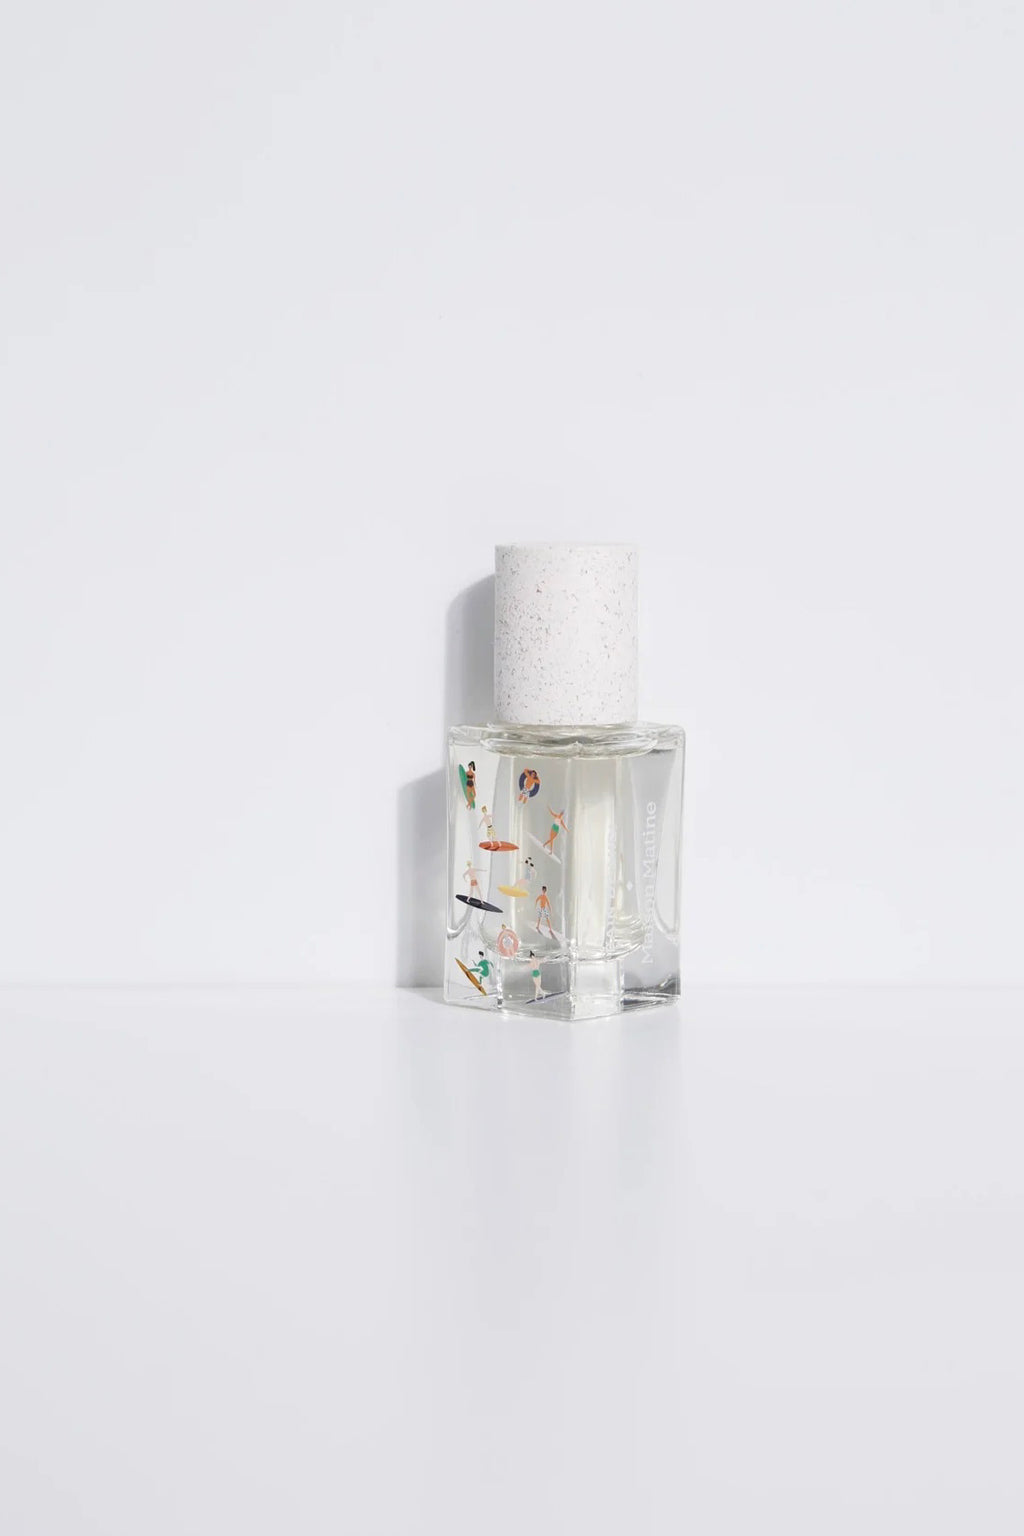 Maison Matine Travel Spray Bain De Midi Eau de Parfum - The Mercantile London